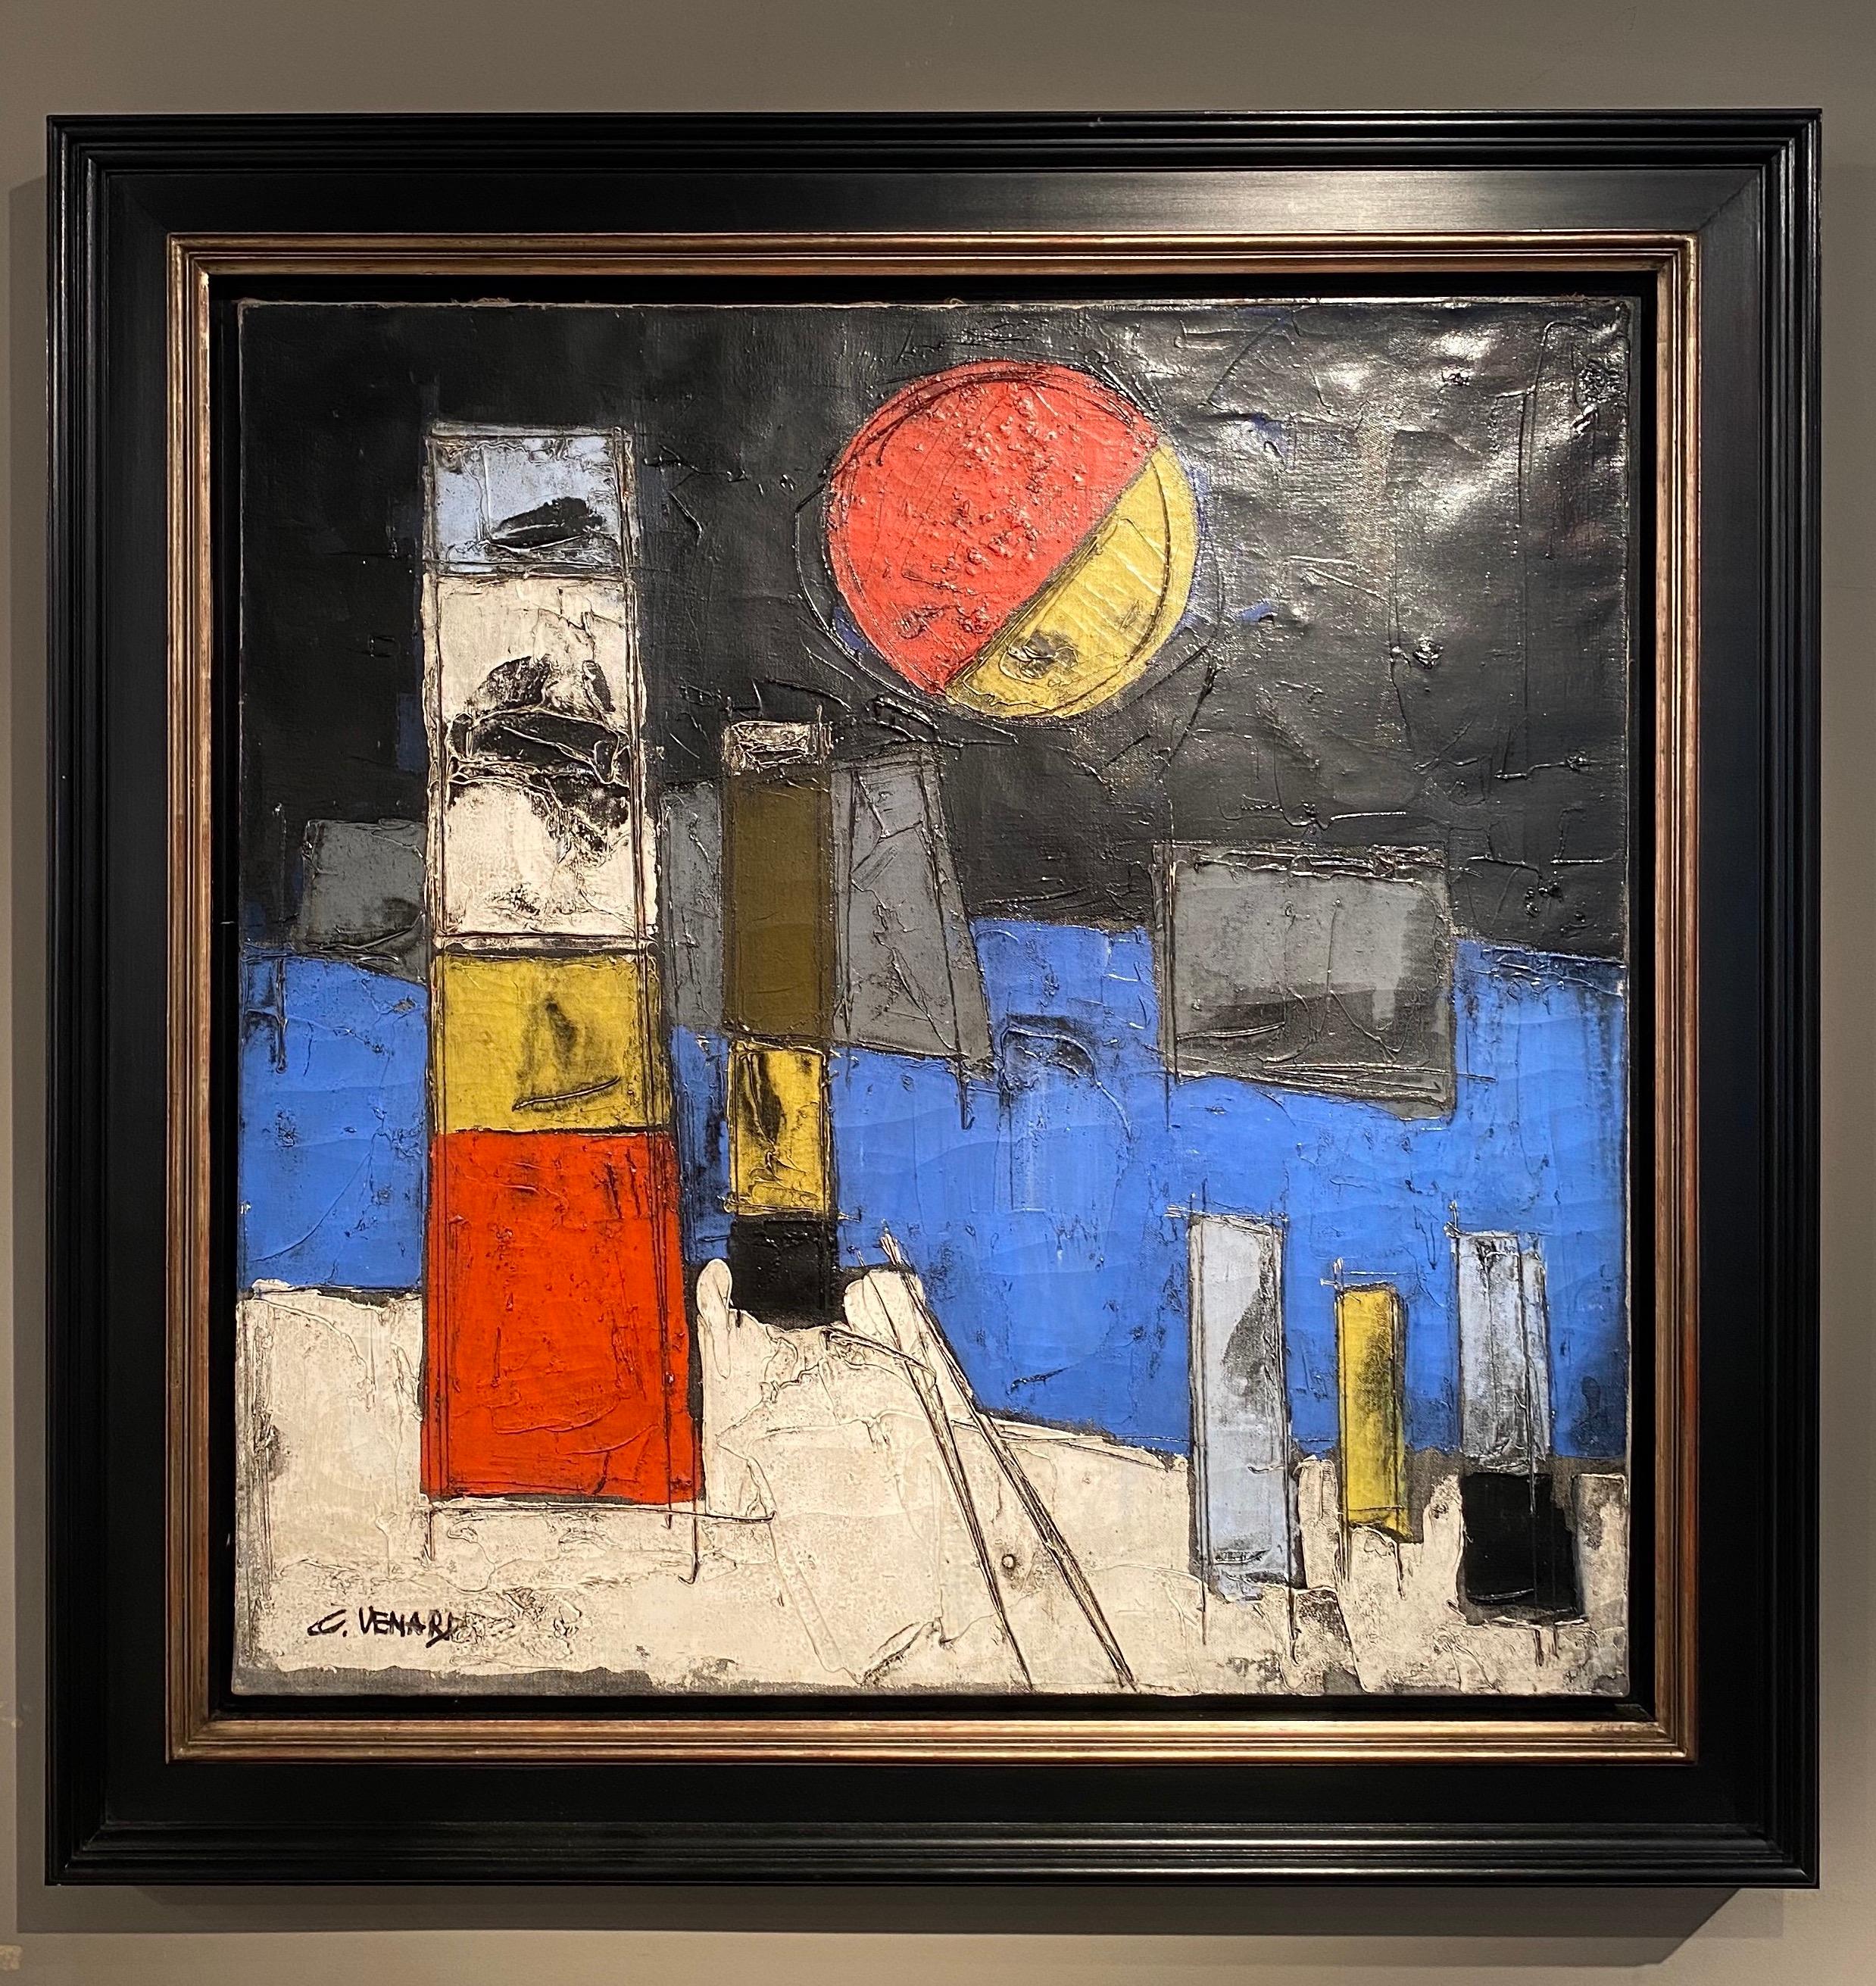 Le Port, peinture de paysage abstrait d'un port, d'un bateau, d'un phare et d'une lune - Painting de Claude Vénard